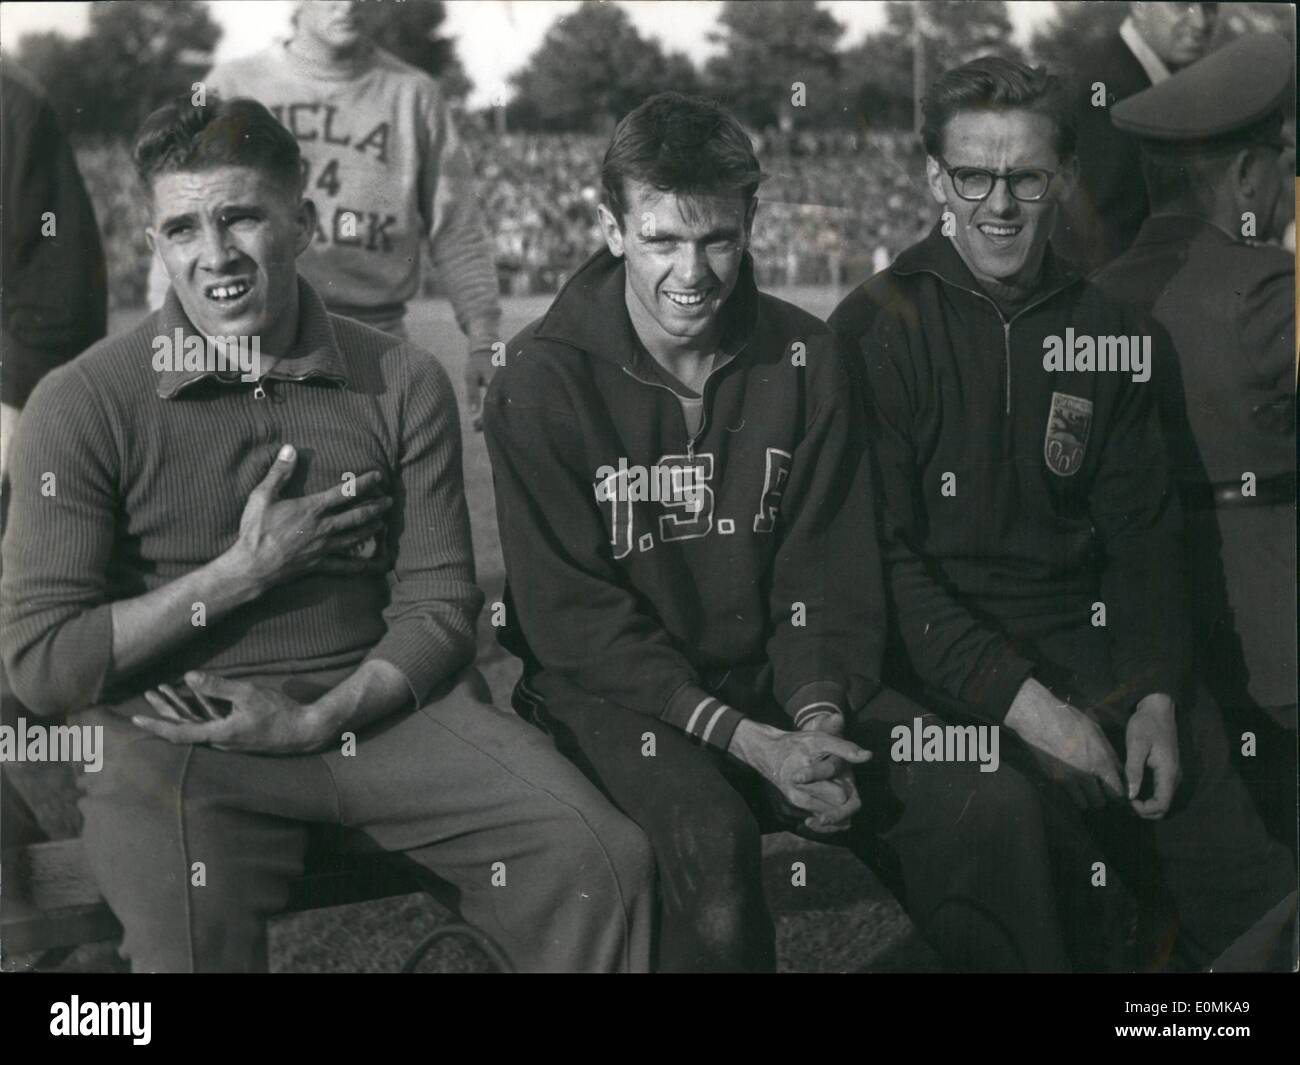 Lug. 07, 1955 - Nella foto sono Heinz Fuetter(a sinistra), Jim Lea(centro) e Leonhard Pohl(a destra). Heinz Fuetter è stato il vincitore di una pista e sul campo la concorrenza guida in Rheinstadium a Duesseldorf. Jim Lea era secondo. Leonhard Pohl è stato terzo. Ambasciatore canadese Leo Cadieux un Foto Stock